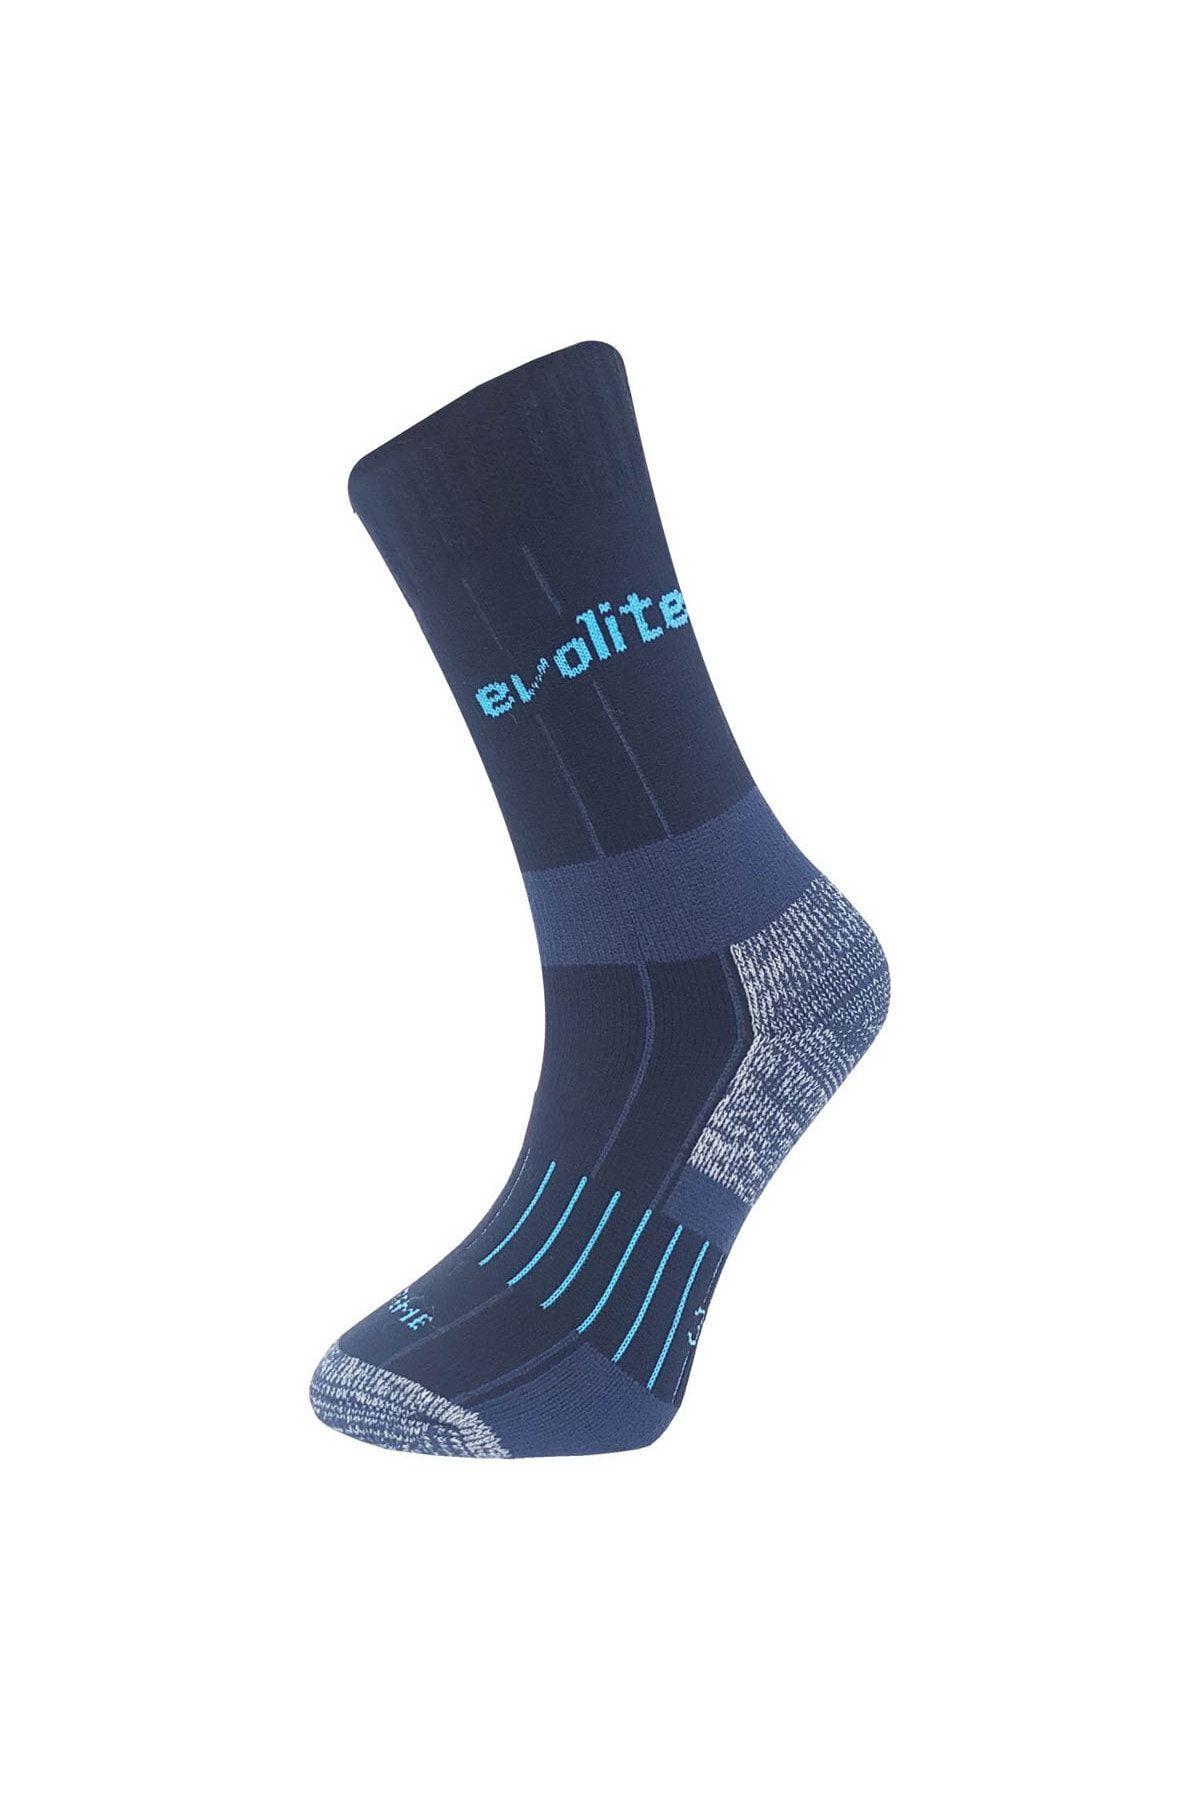 Evolite Unisex Mavi -20°c Kışlık Termal Çorap